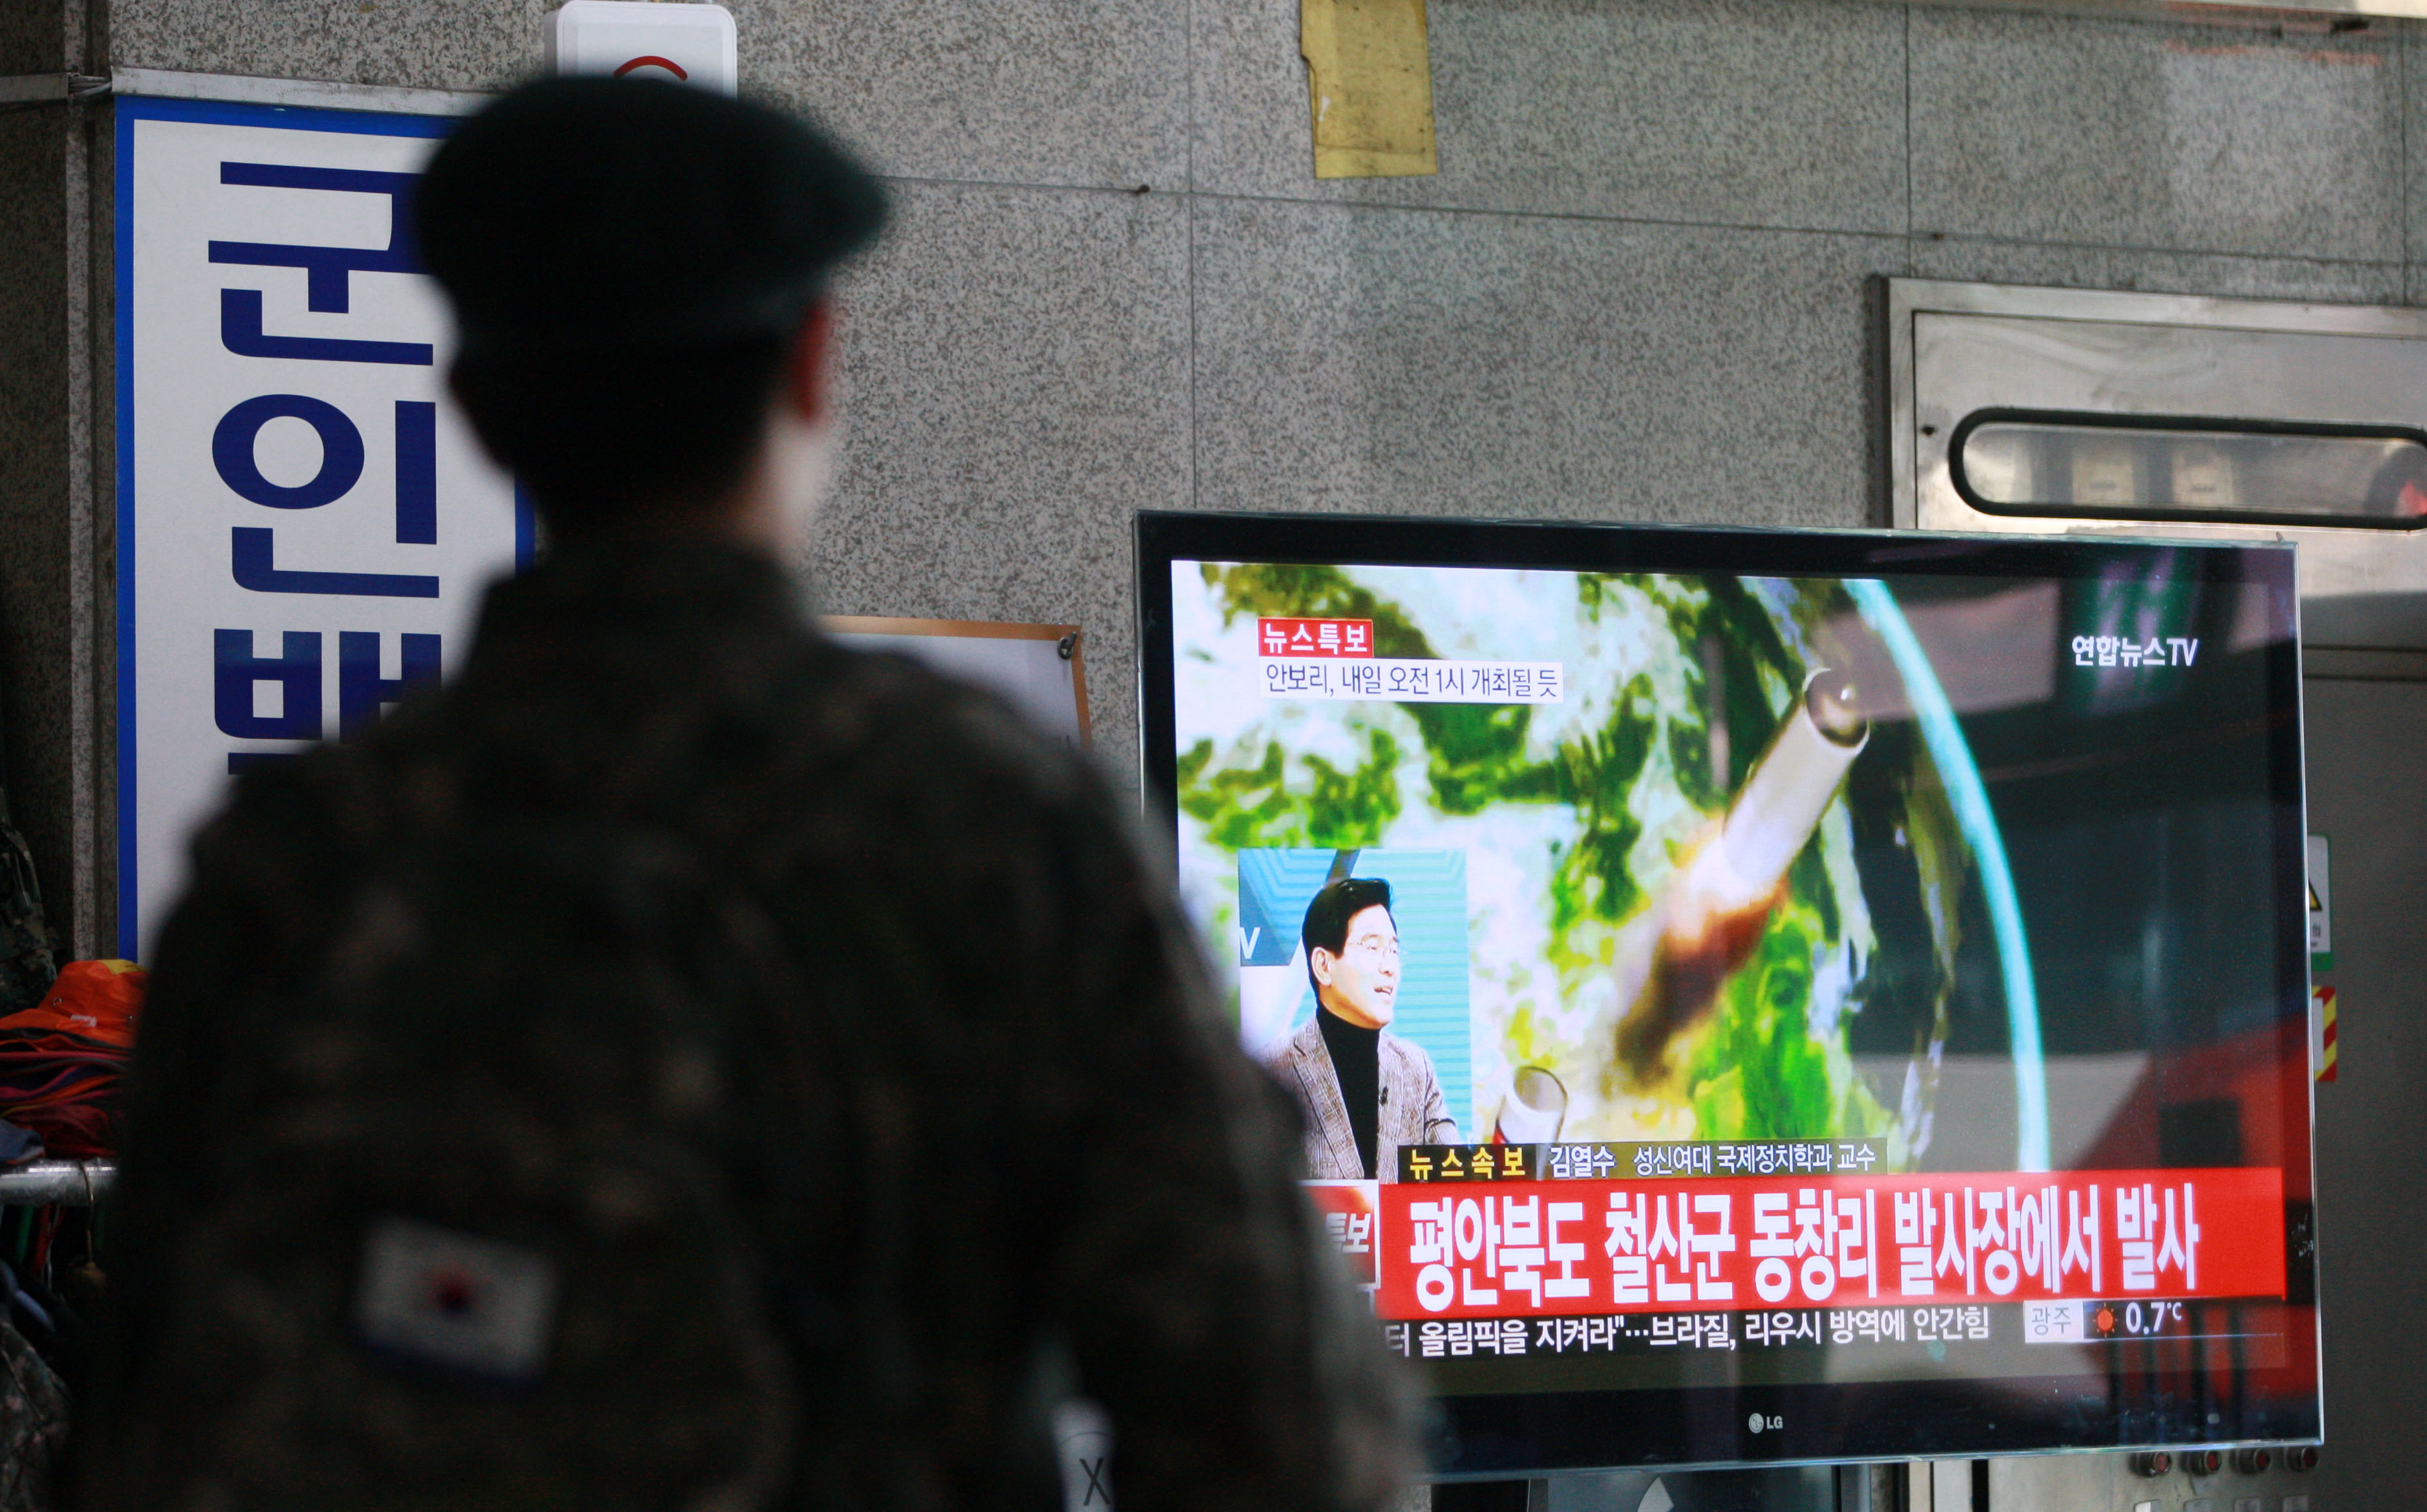 북한이 지난달 제4차 핵실험에 이어 한 달여만인 7일 장거리 로켓(미사일)을 발사한 가운데 강원 춘천시 버스터미널에서 군 장병이 뉴스특보를 관심 있게 지켜보고 있다. 연합뉴스.